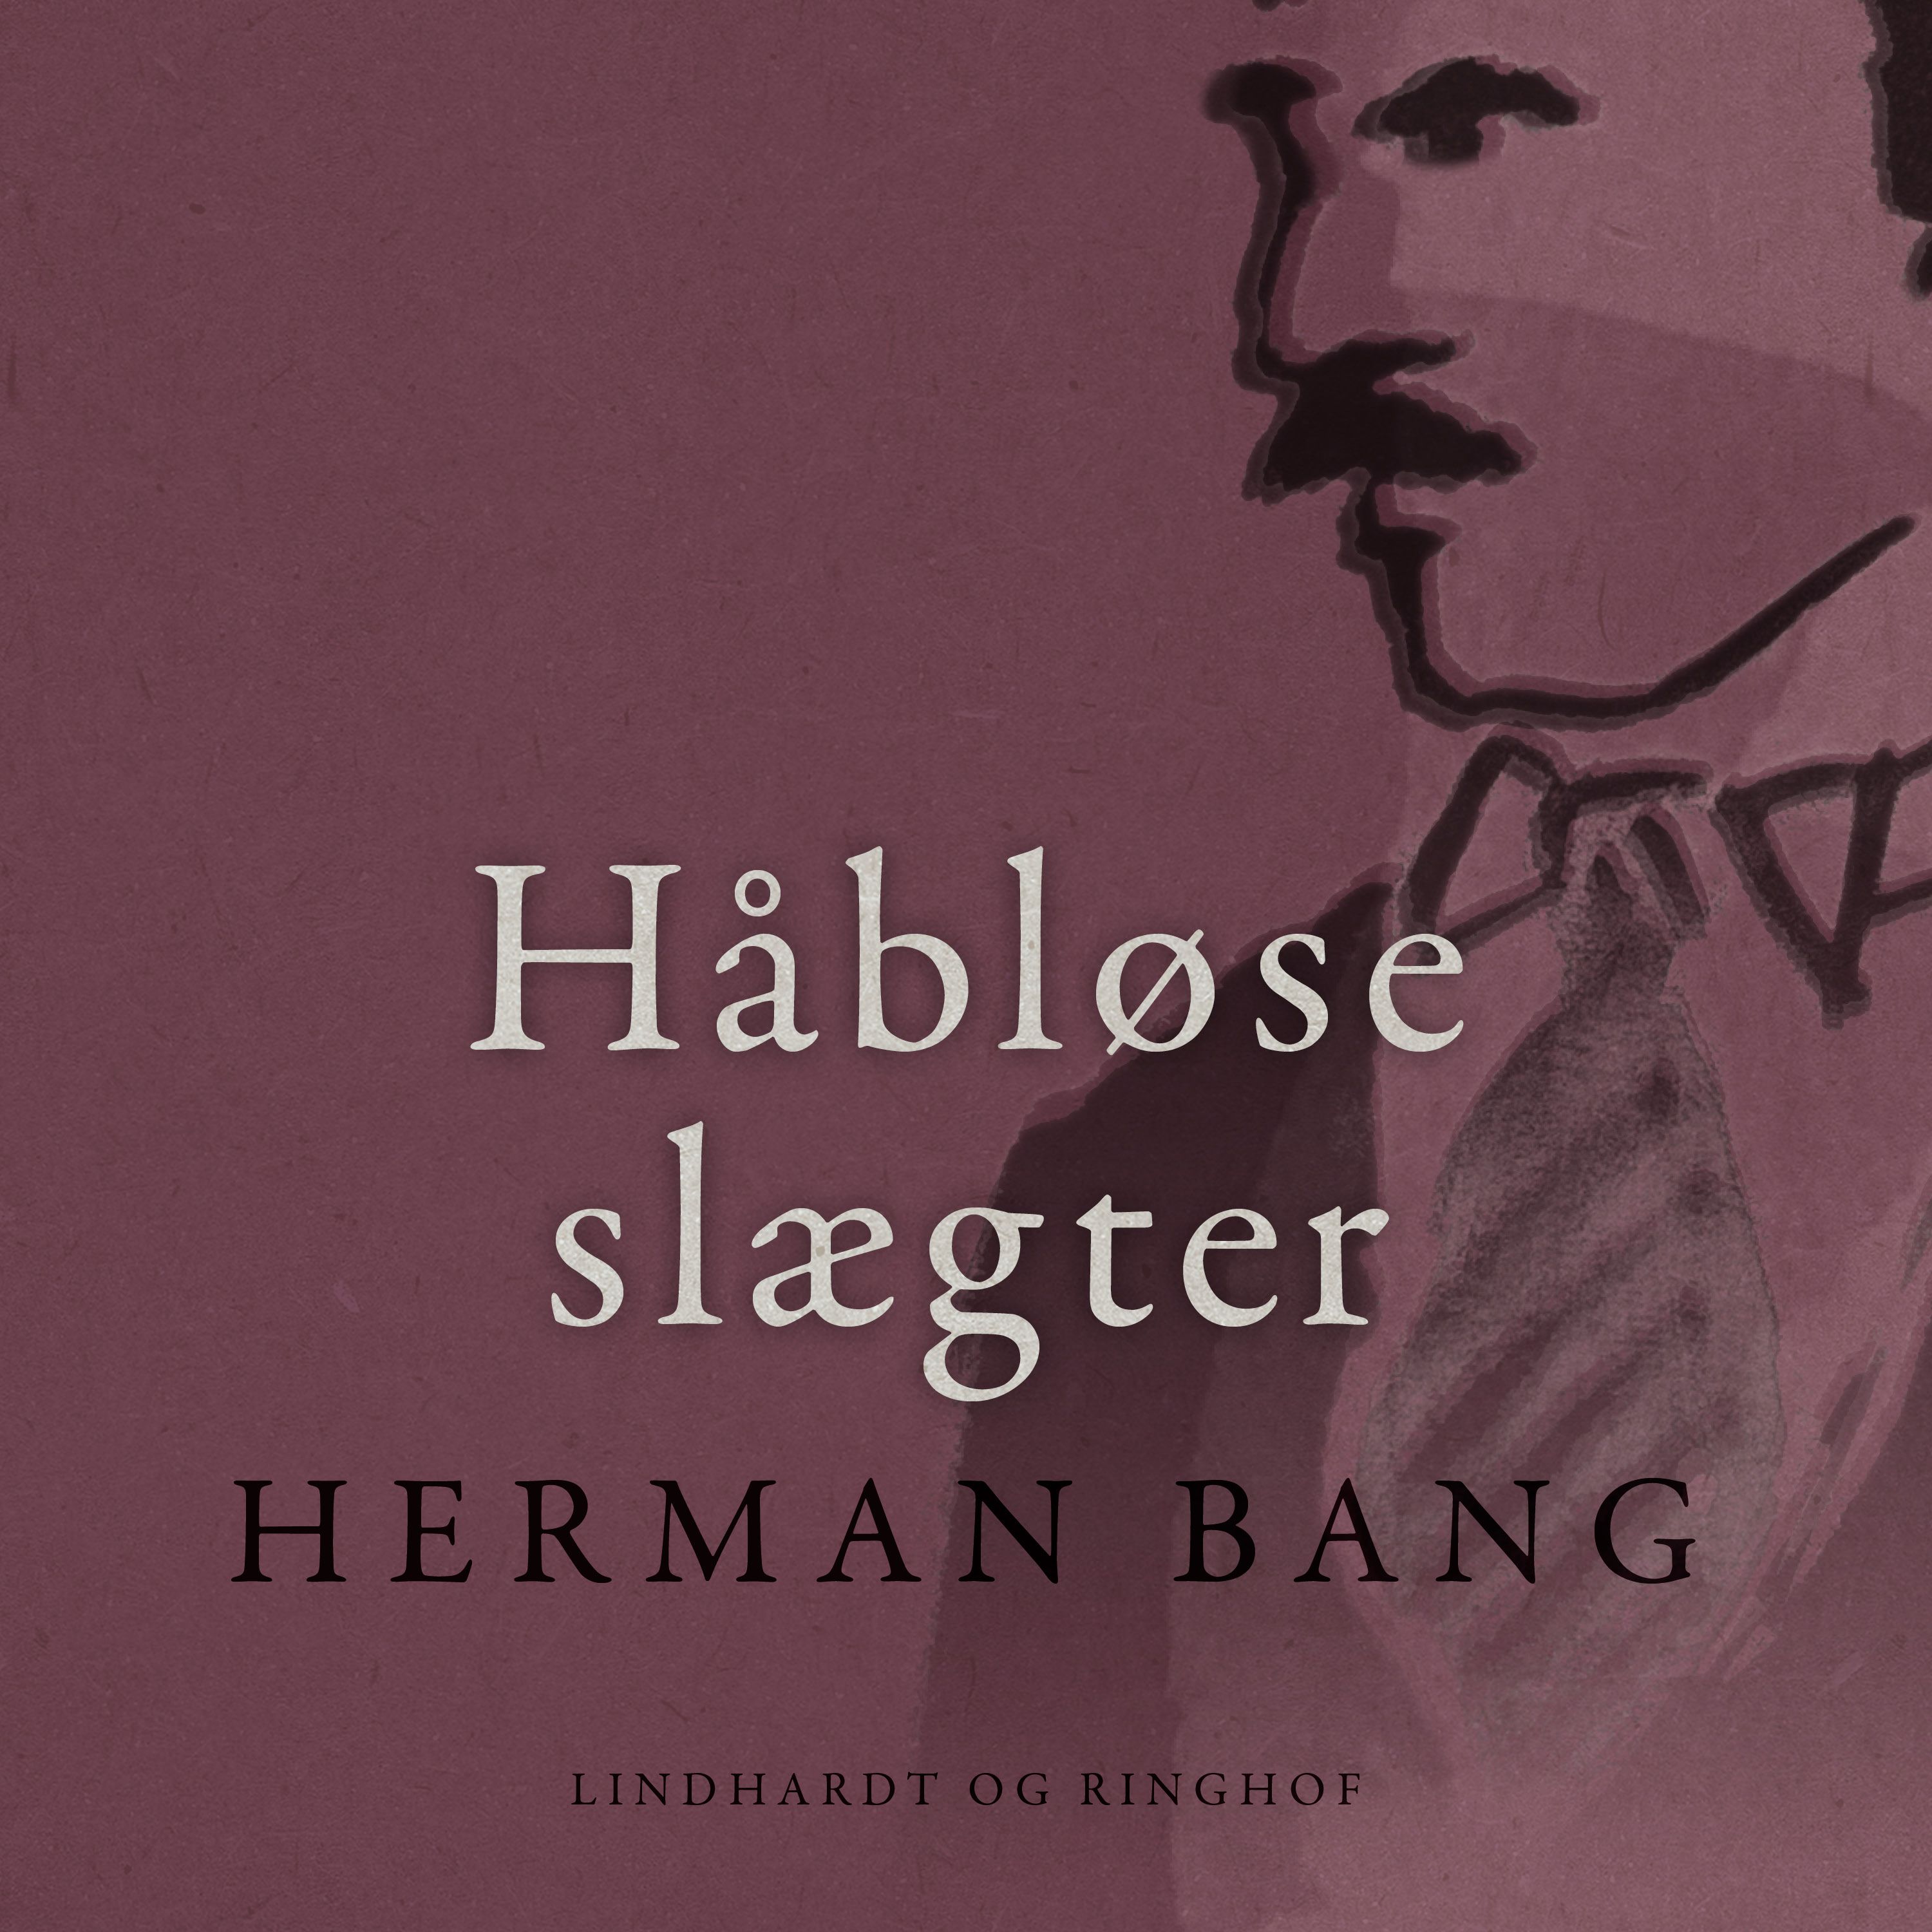 Håbløse slægter, audiobook by Herman Bang